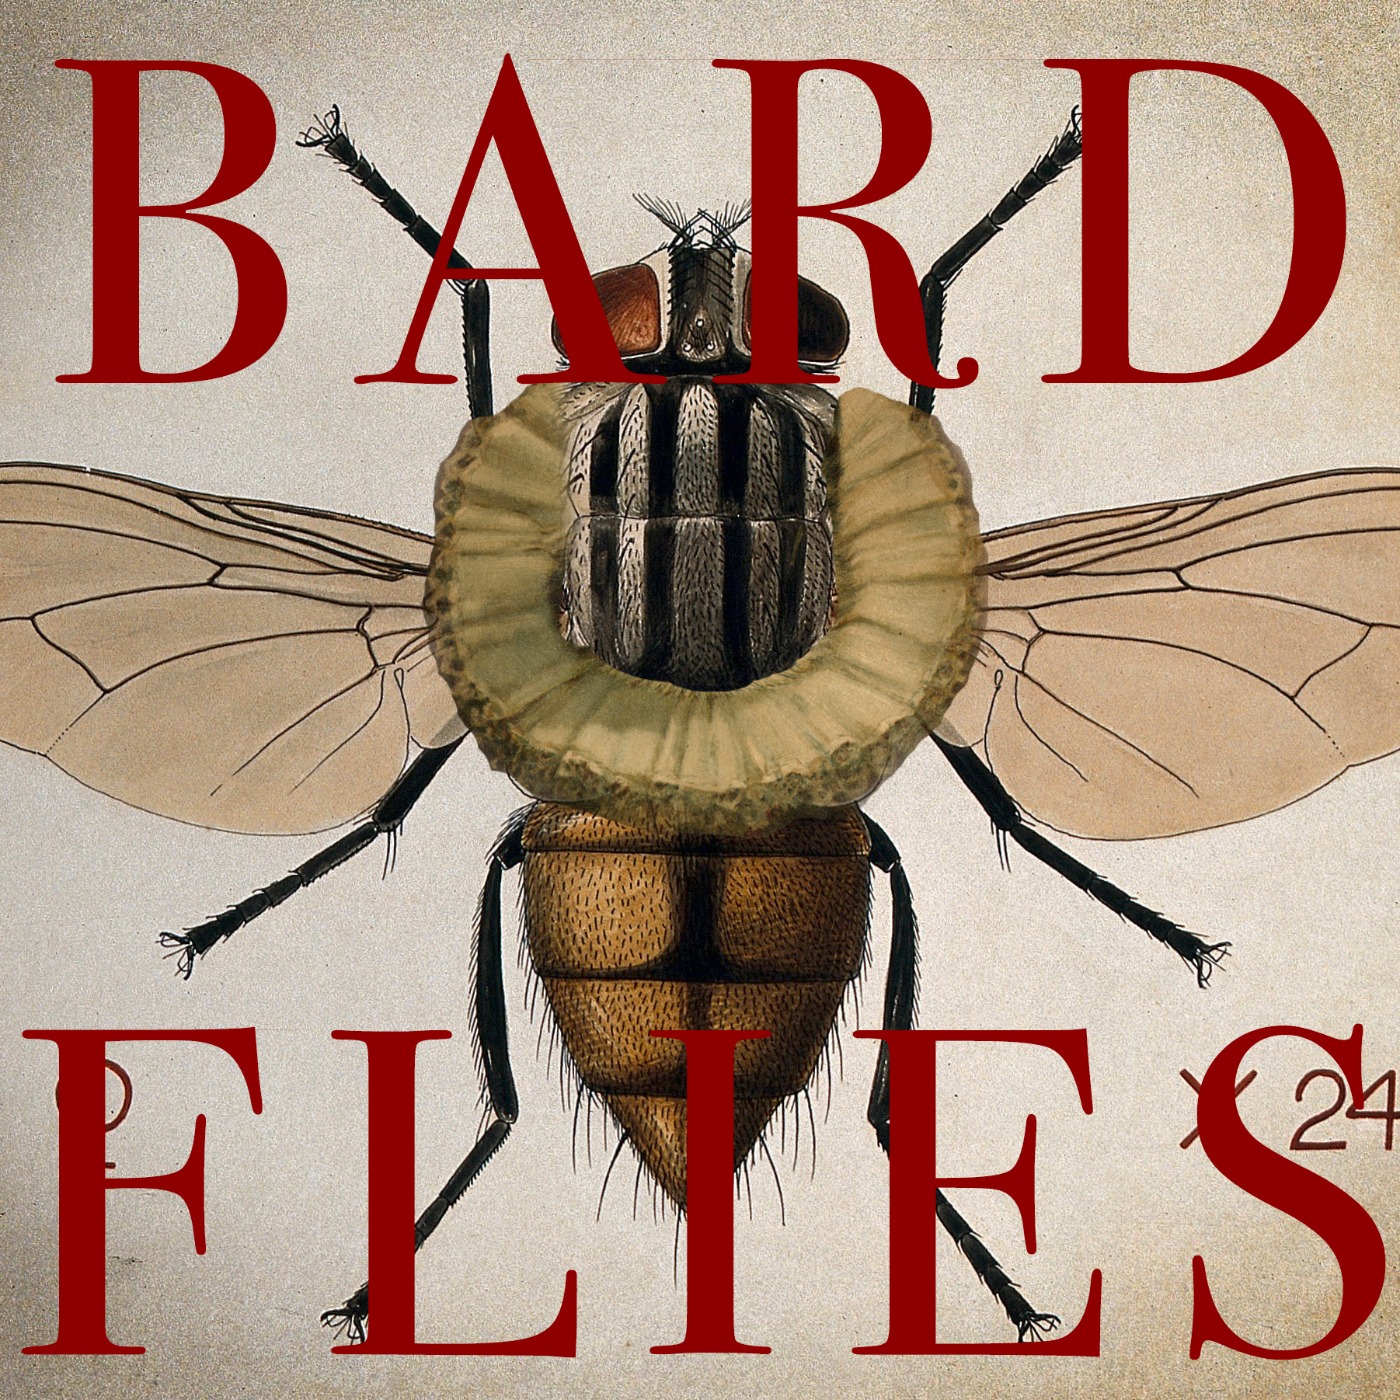 Bard Flies